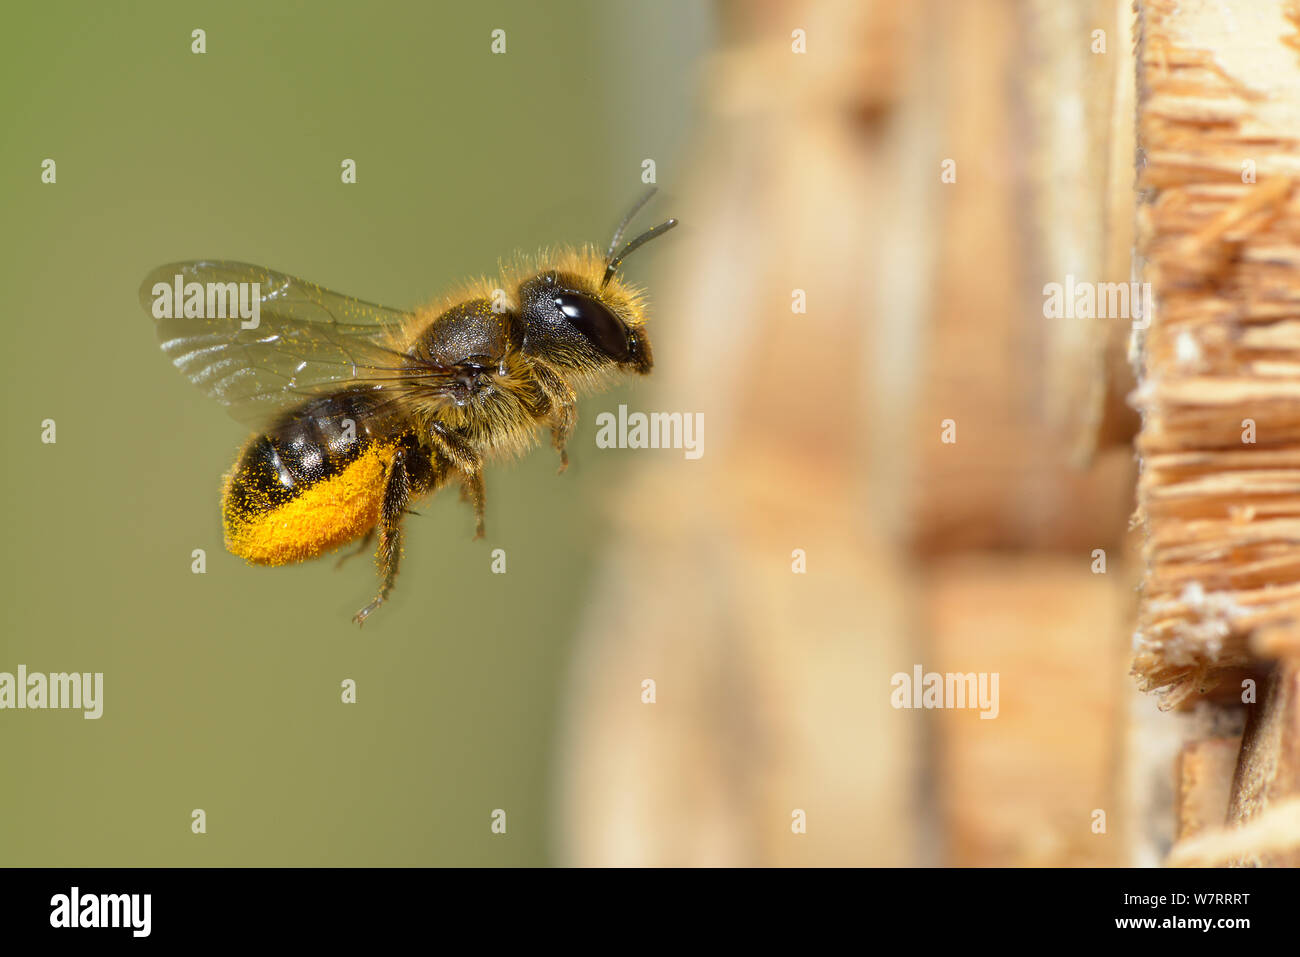 Mason bee azul femenino (Osmia caerulescens) que transportan el polen en su abdomen llevando polen scopa (pelos) a un nido celular en un cuadro de insectos, Hertfordshire, Inglaterra, en junio. Foto de stock